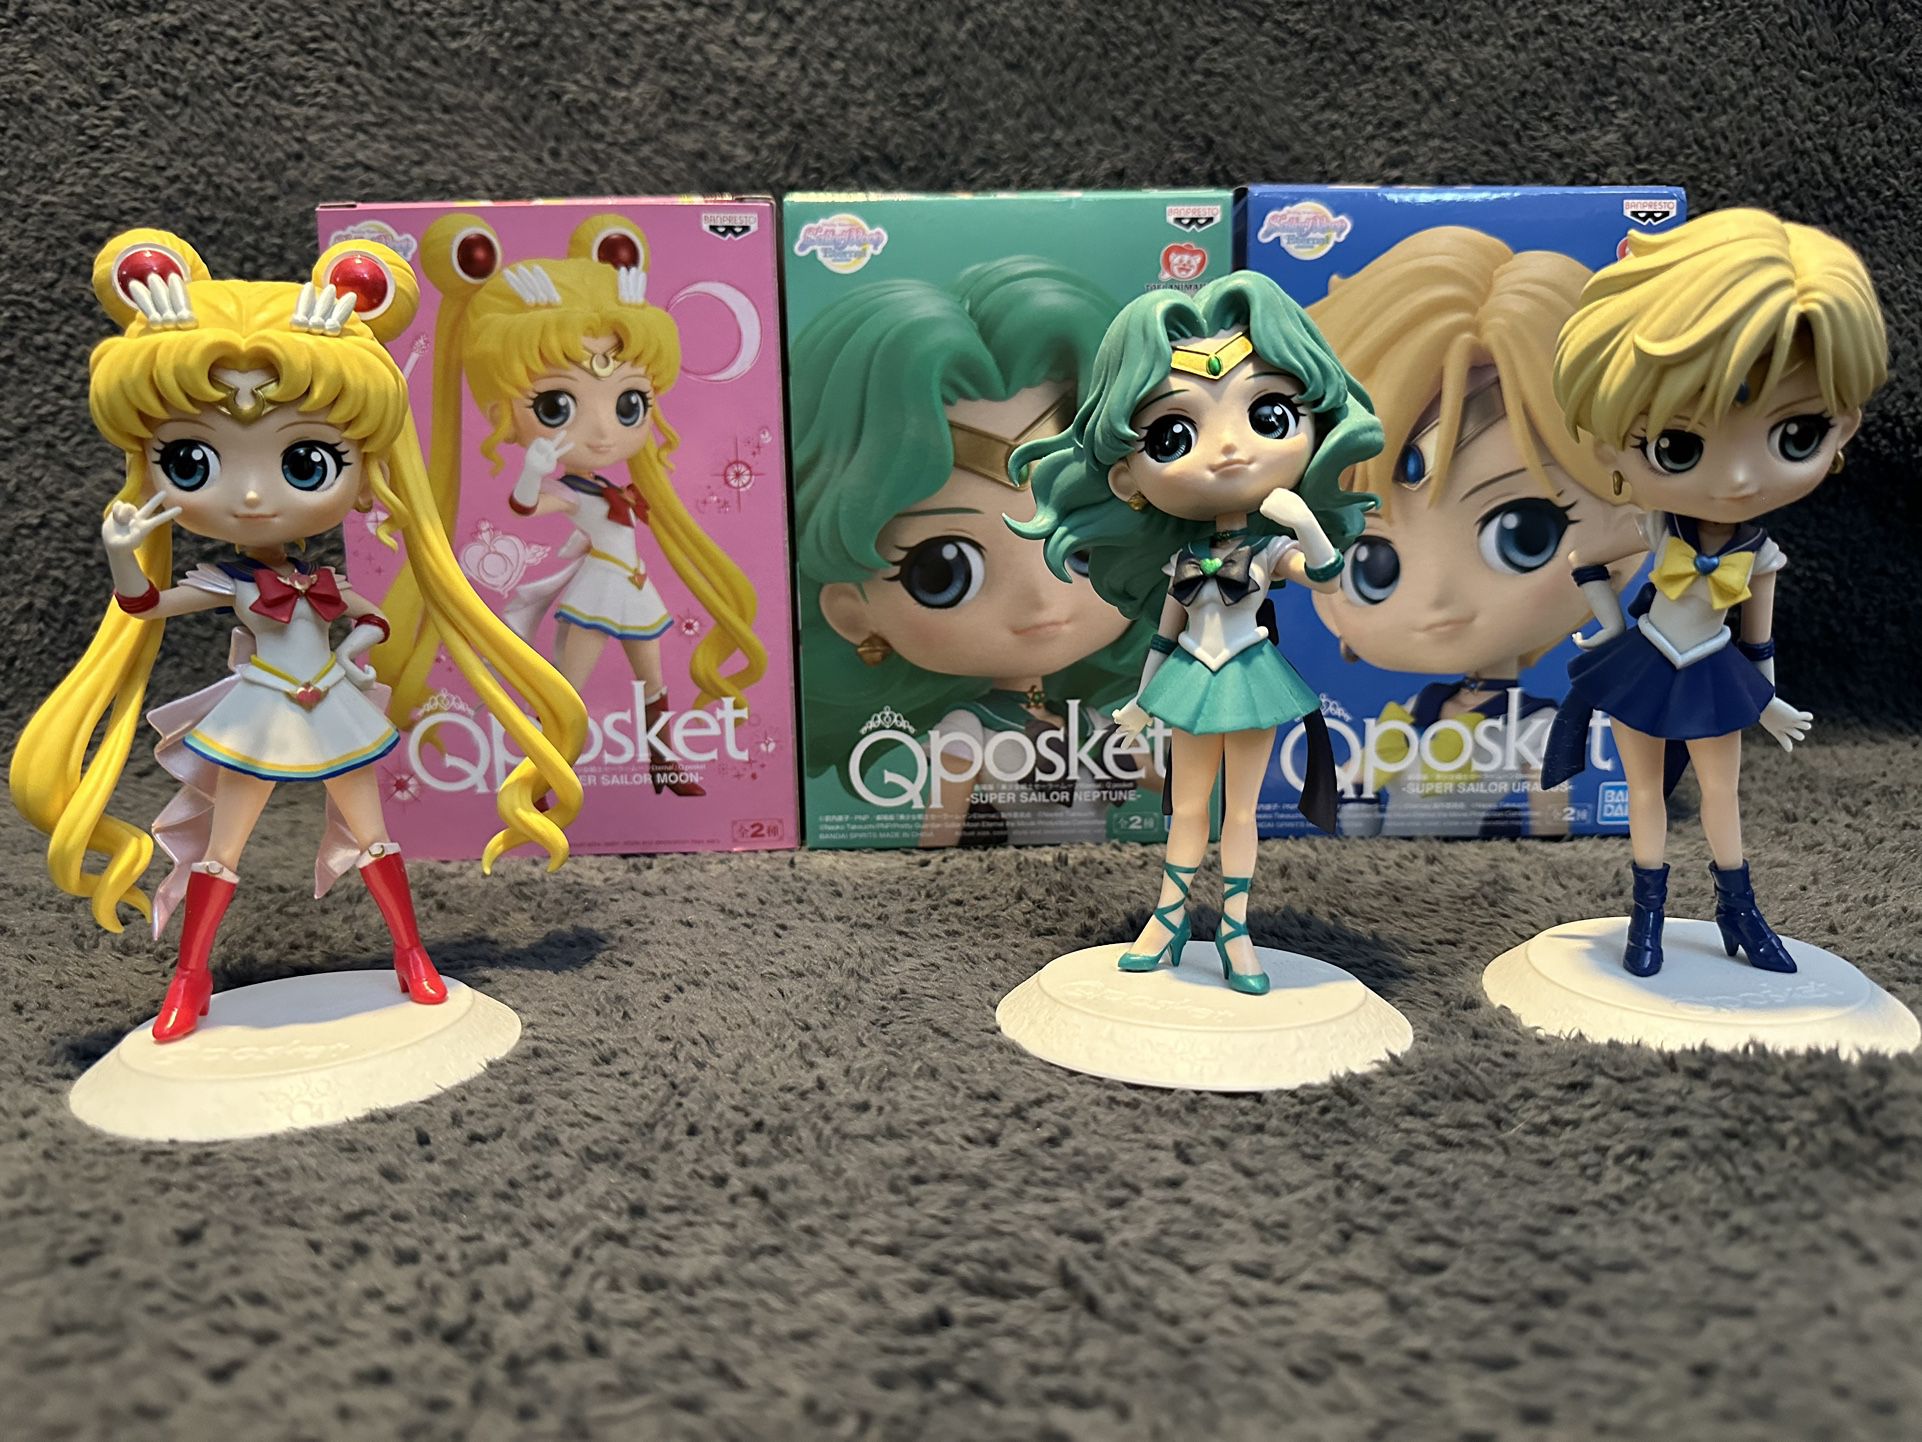 Sailor Moon Figures